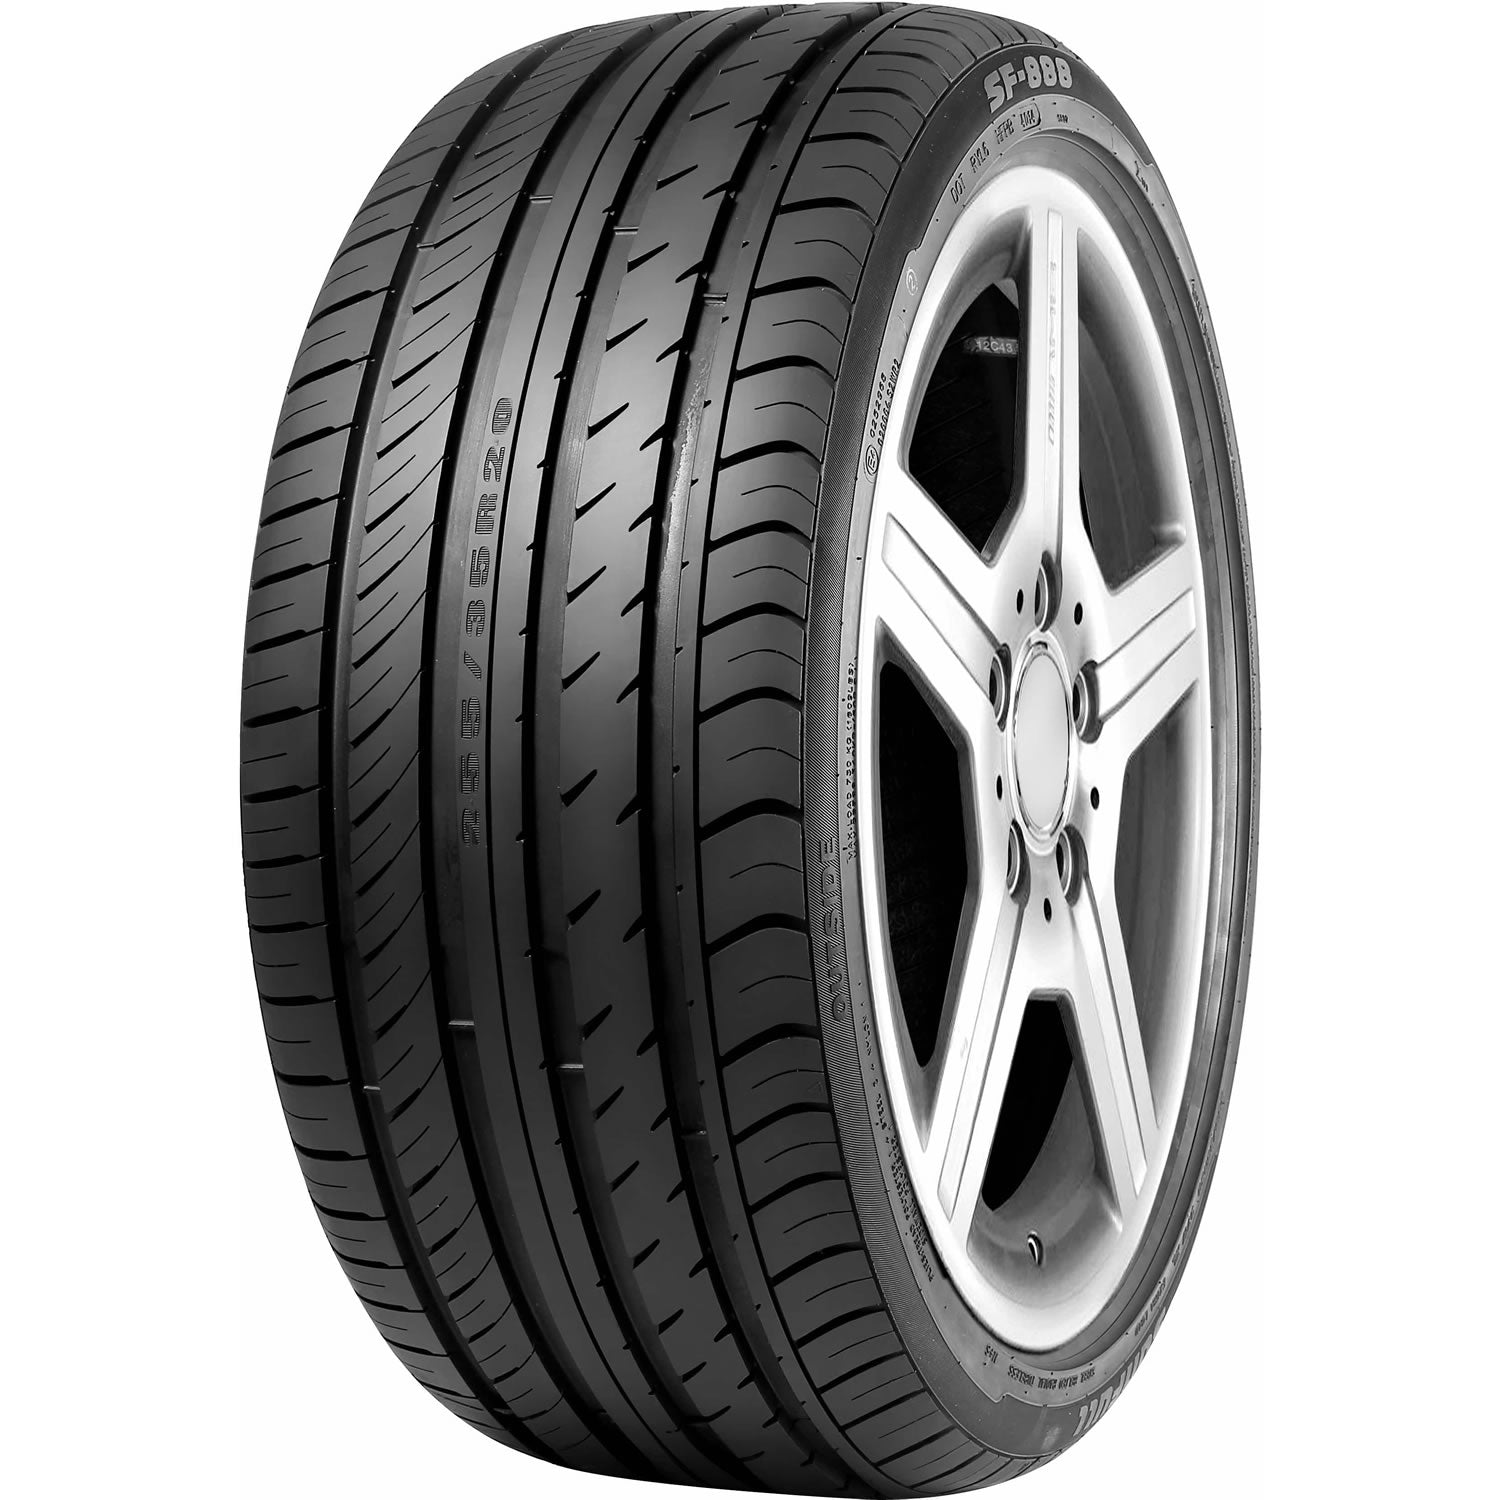 SUNFULL SF-888 225/55R16 XL (25.8X9.2R 16) Tires